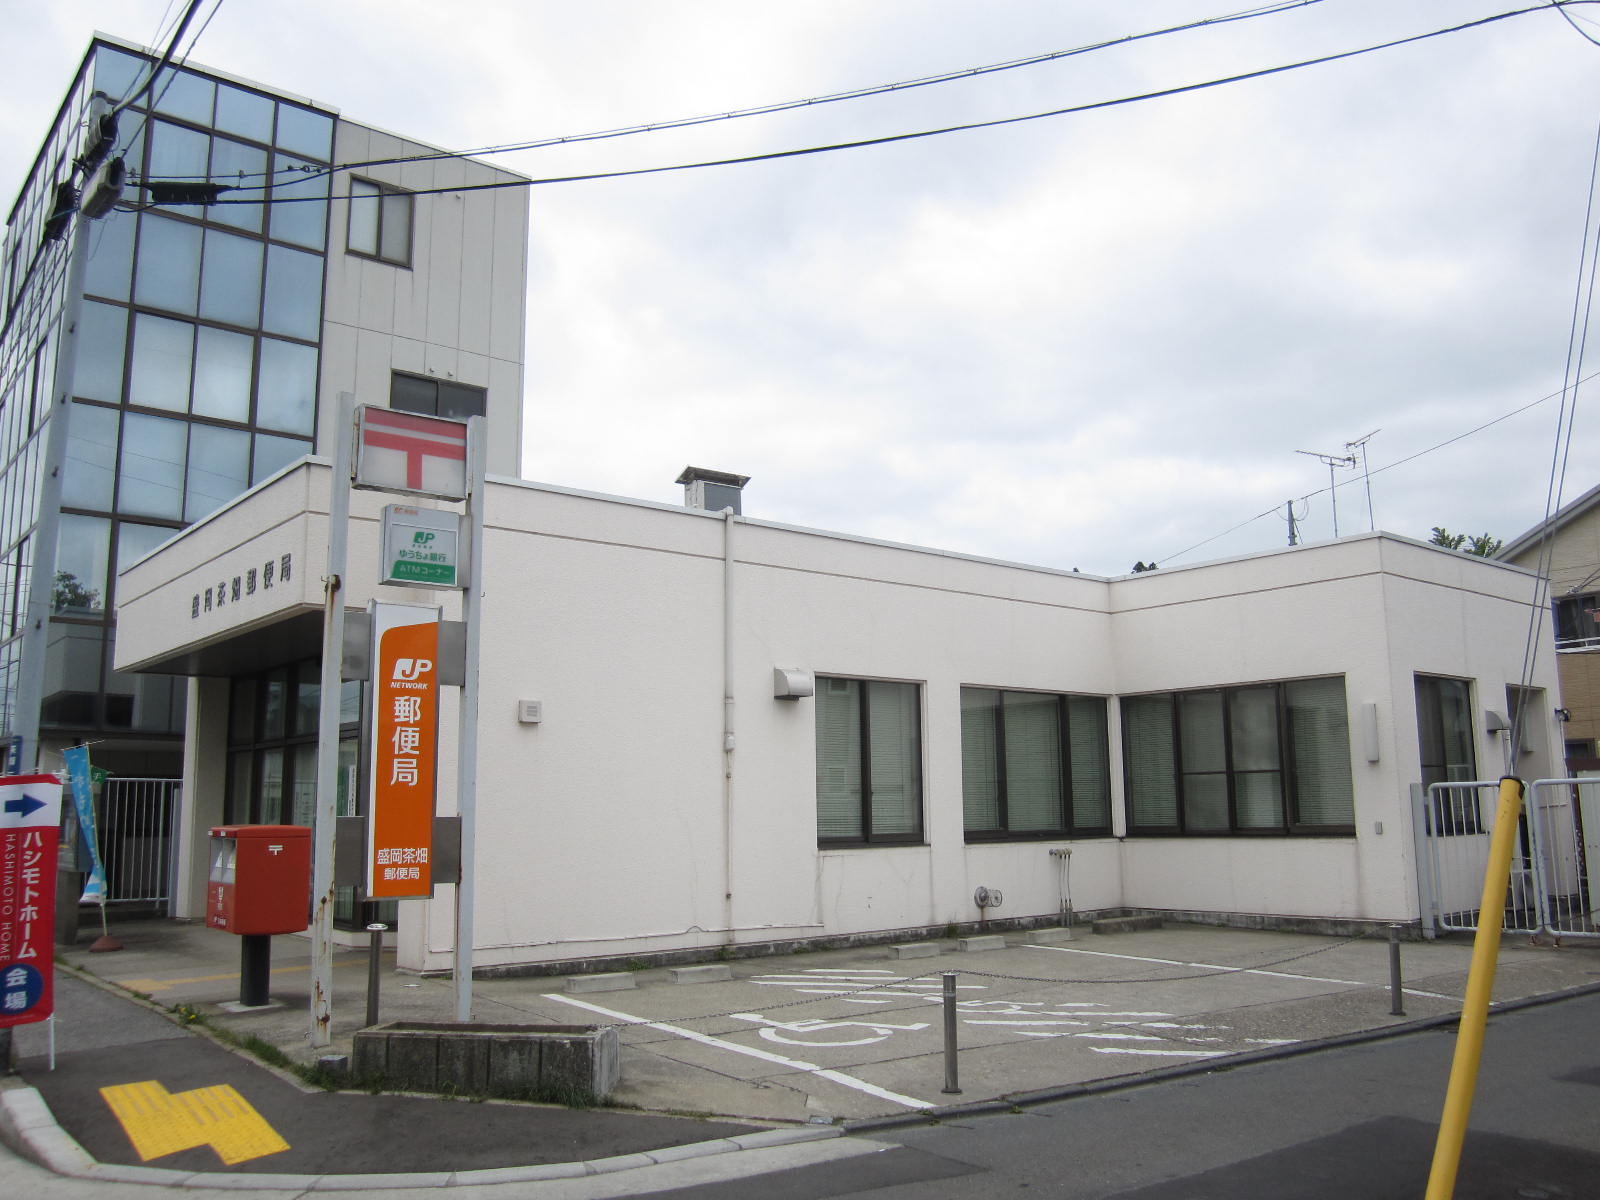 post office. 712m to Morioka tea garden post office (post office)